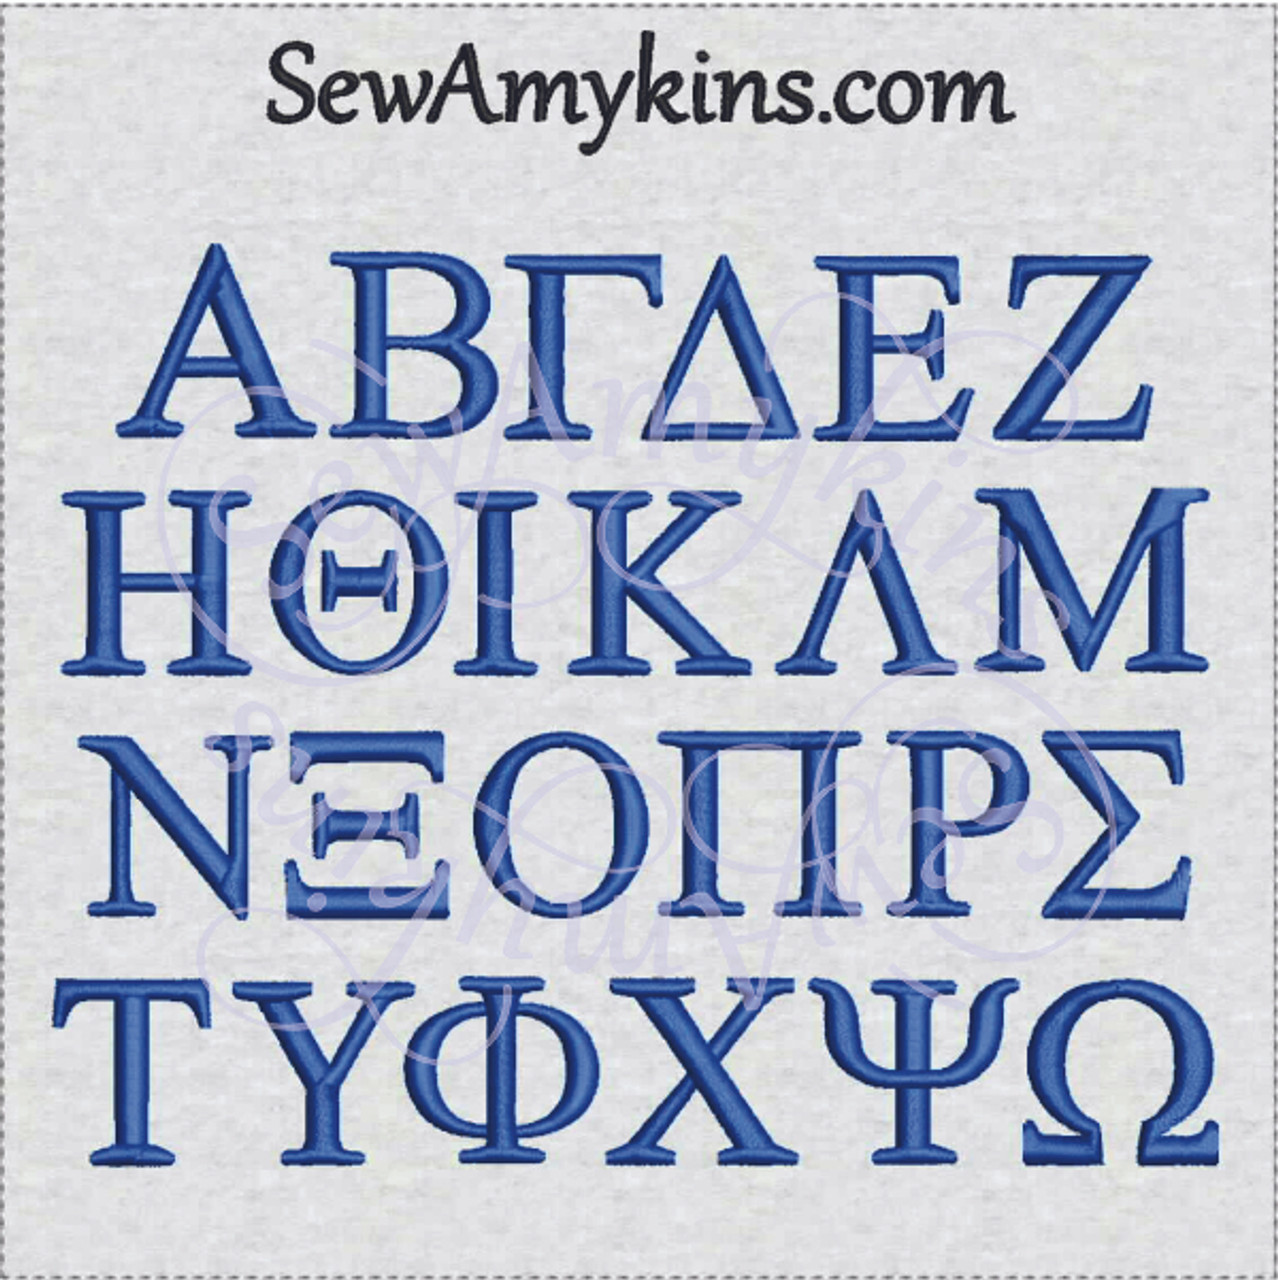 greek letters